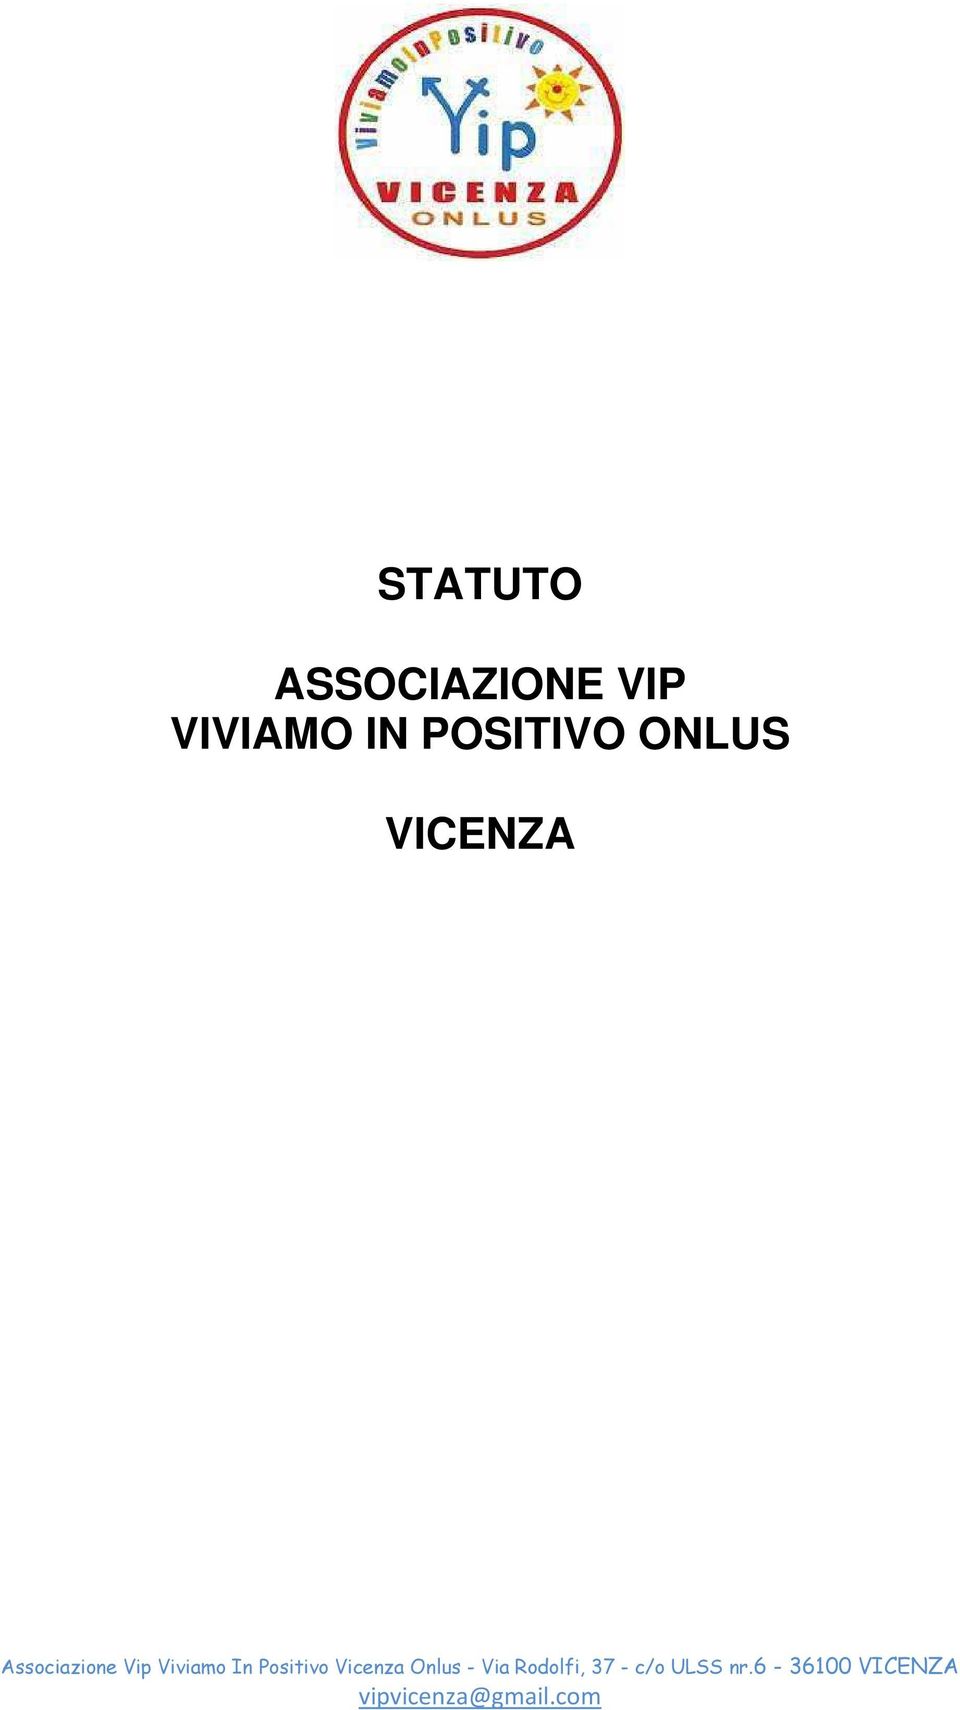 VIP VIVIAMO IN